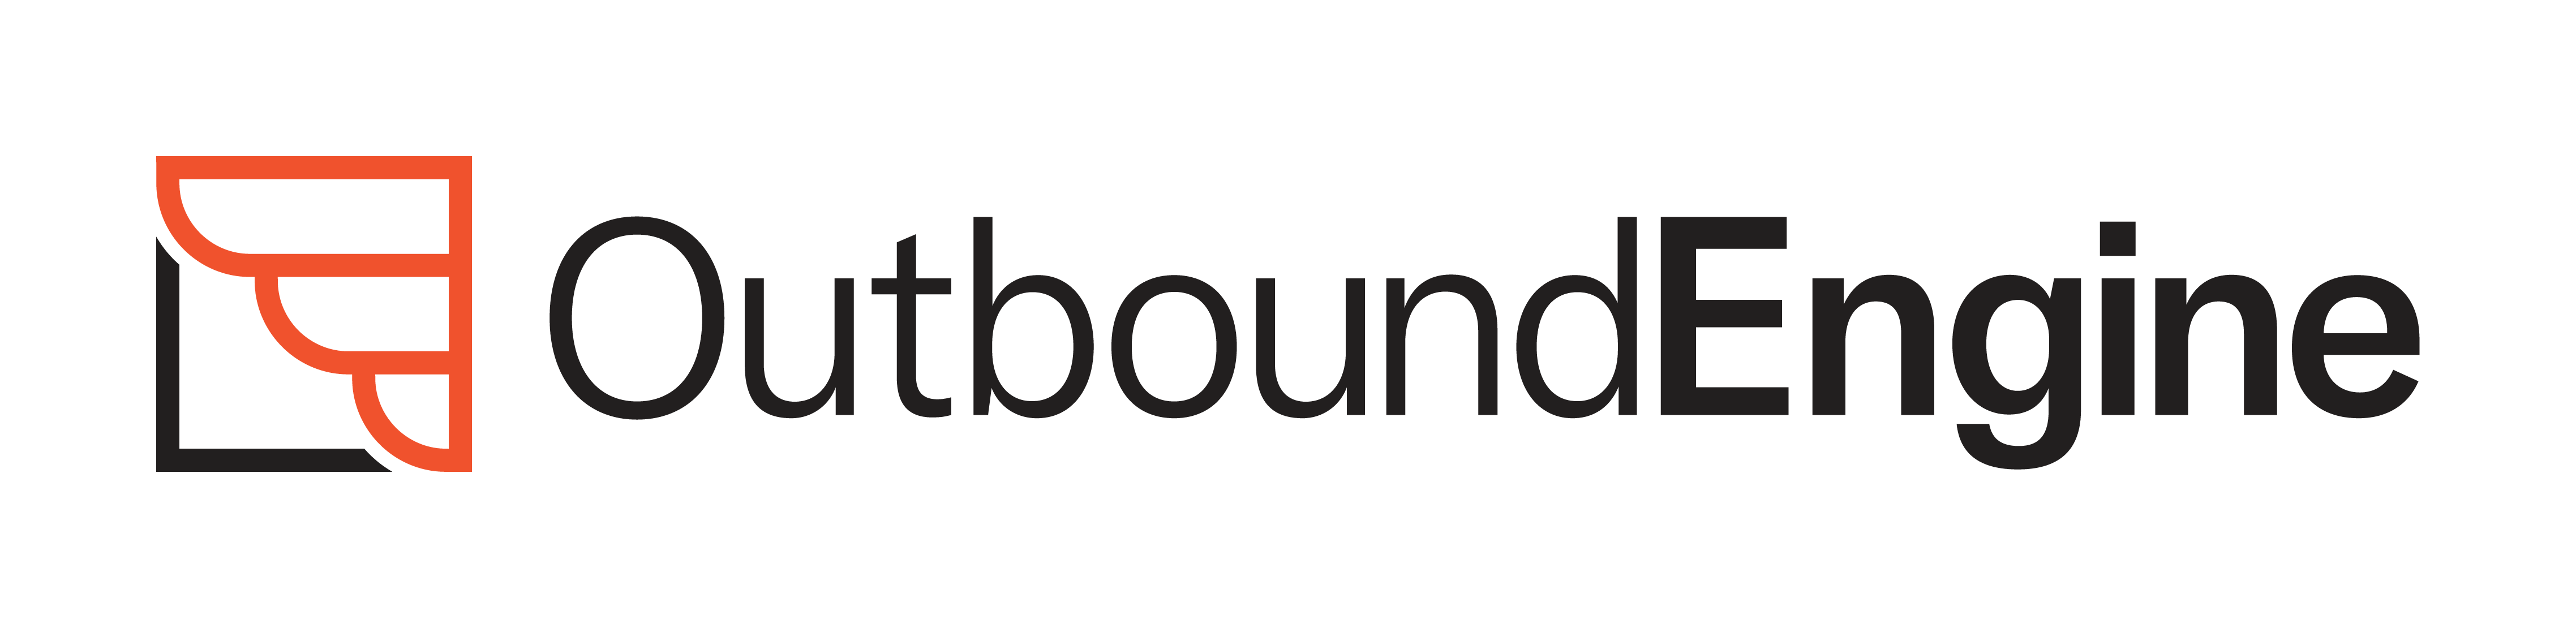 Outbound-Engine_Logo